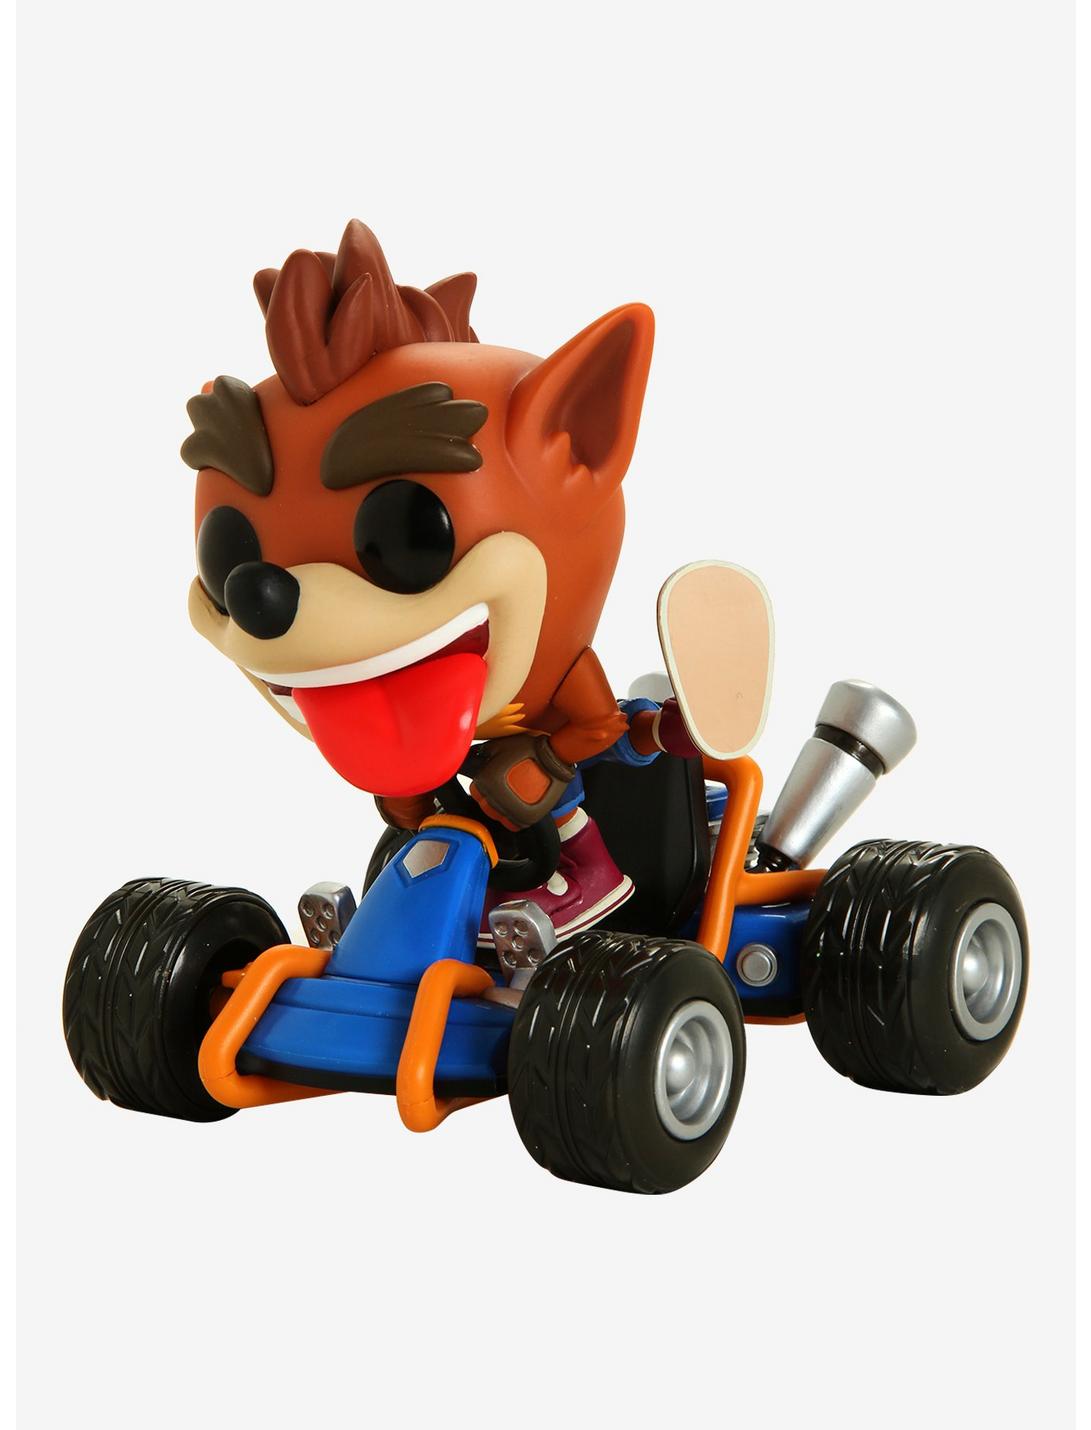 Funko Pop! Rides Crash Team Racing Crash Bandicoot Vinyl Figure, , hi-res